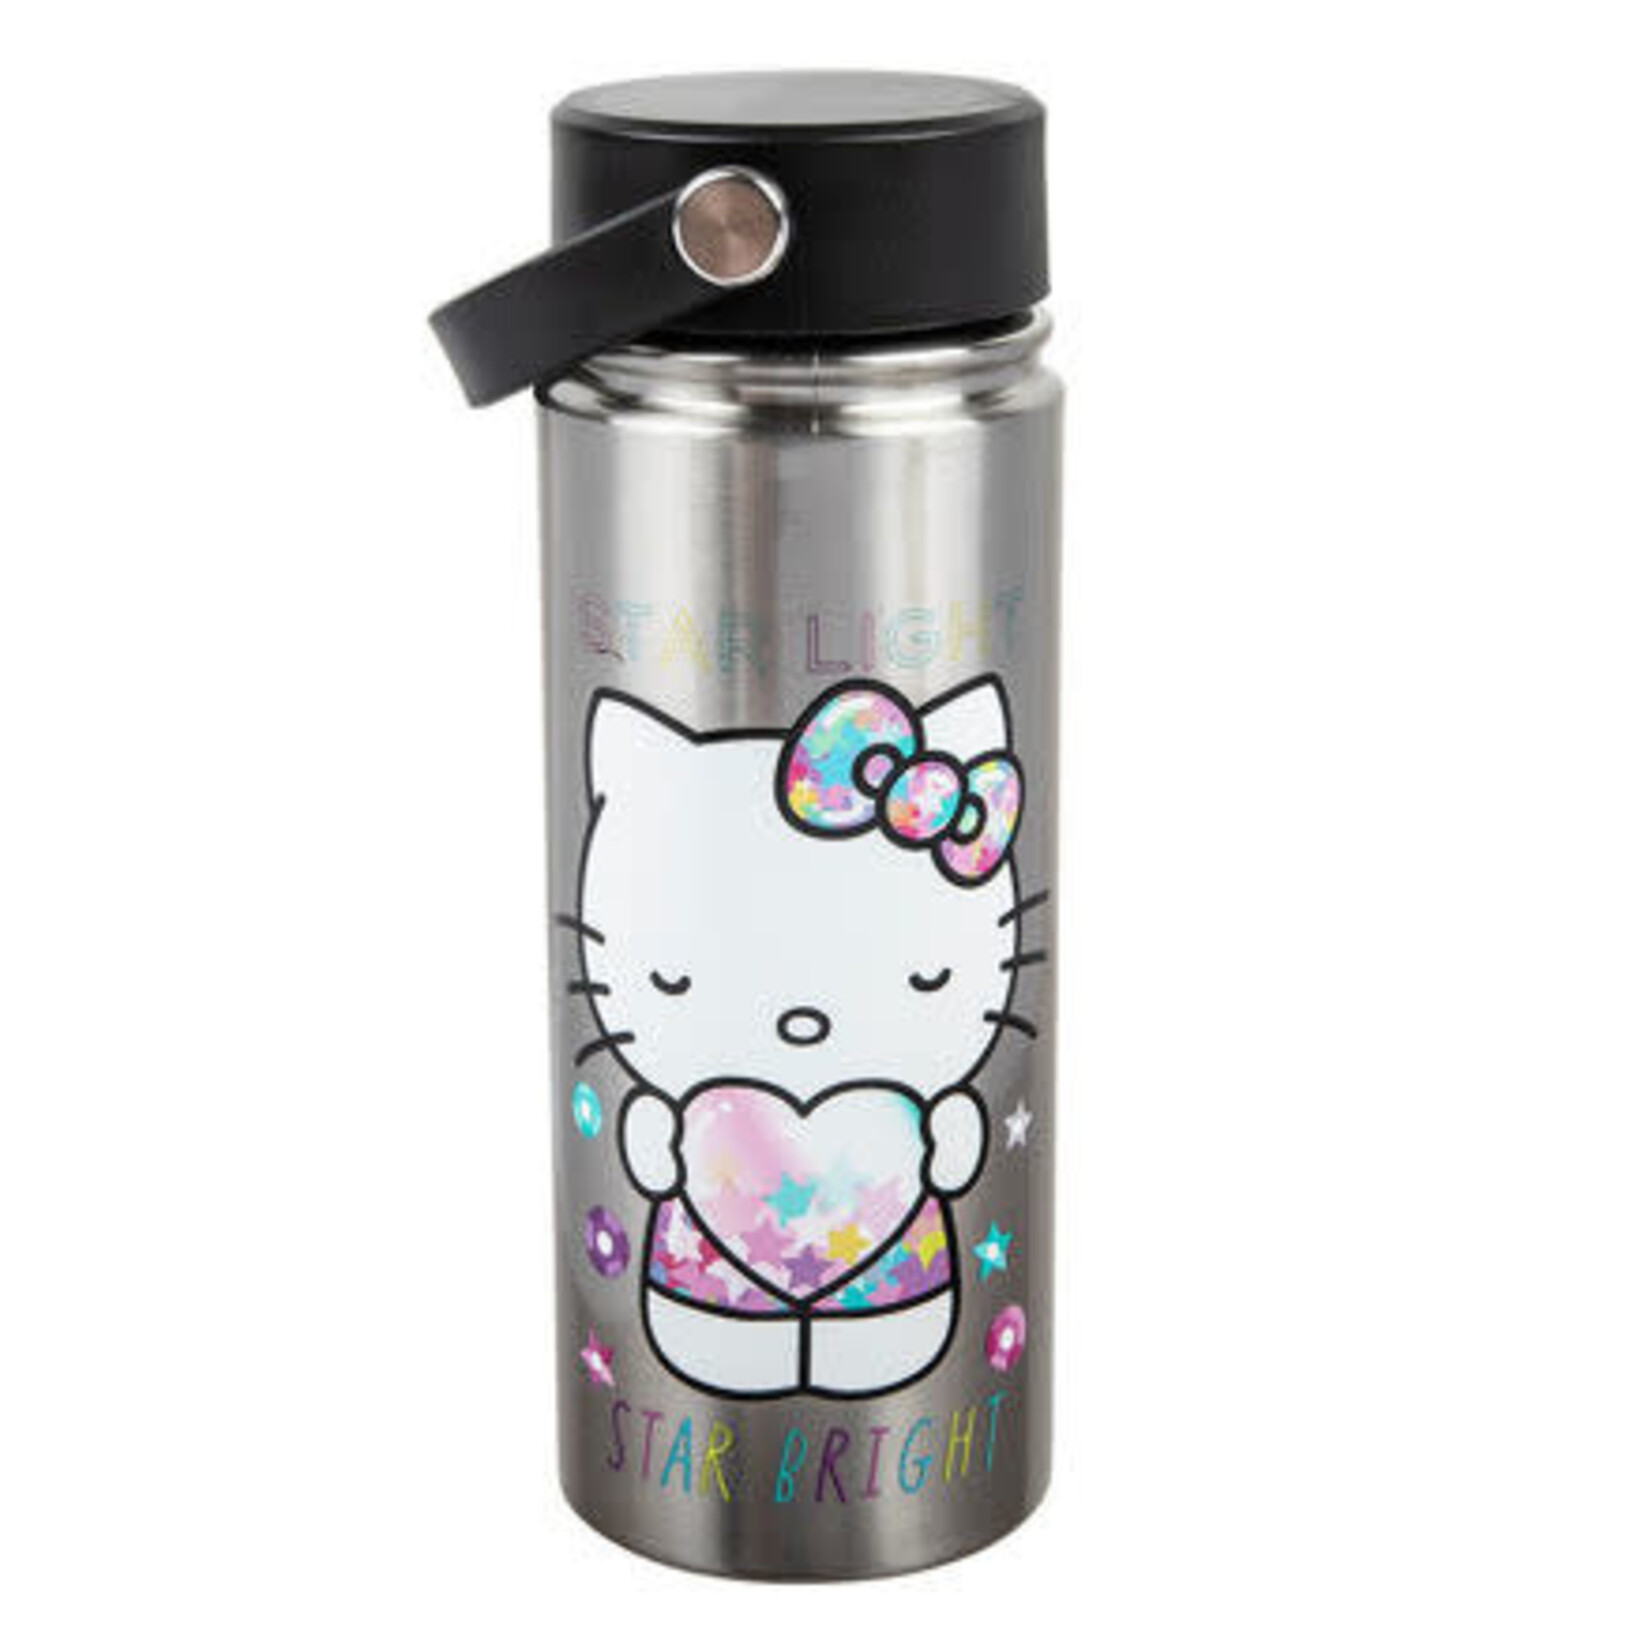 BIOWORLD Hello Kitty Star Shine 17 oz. Stainless Steel Water Bottle